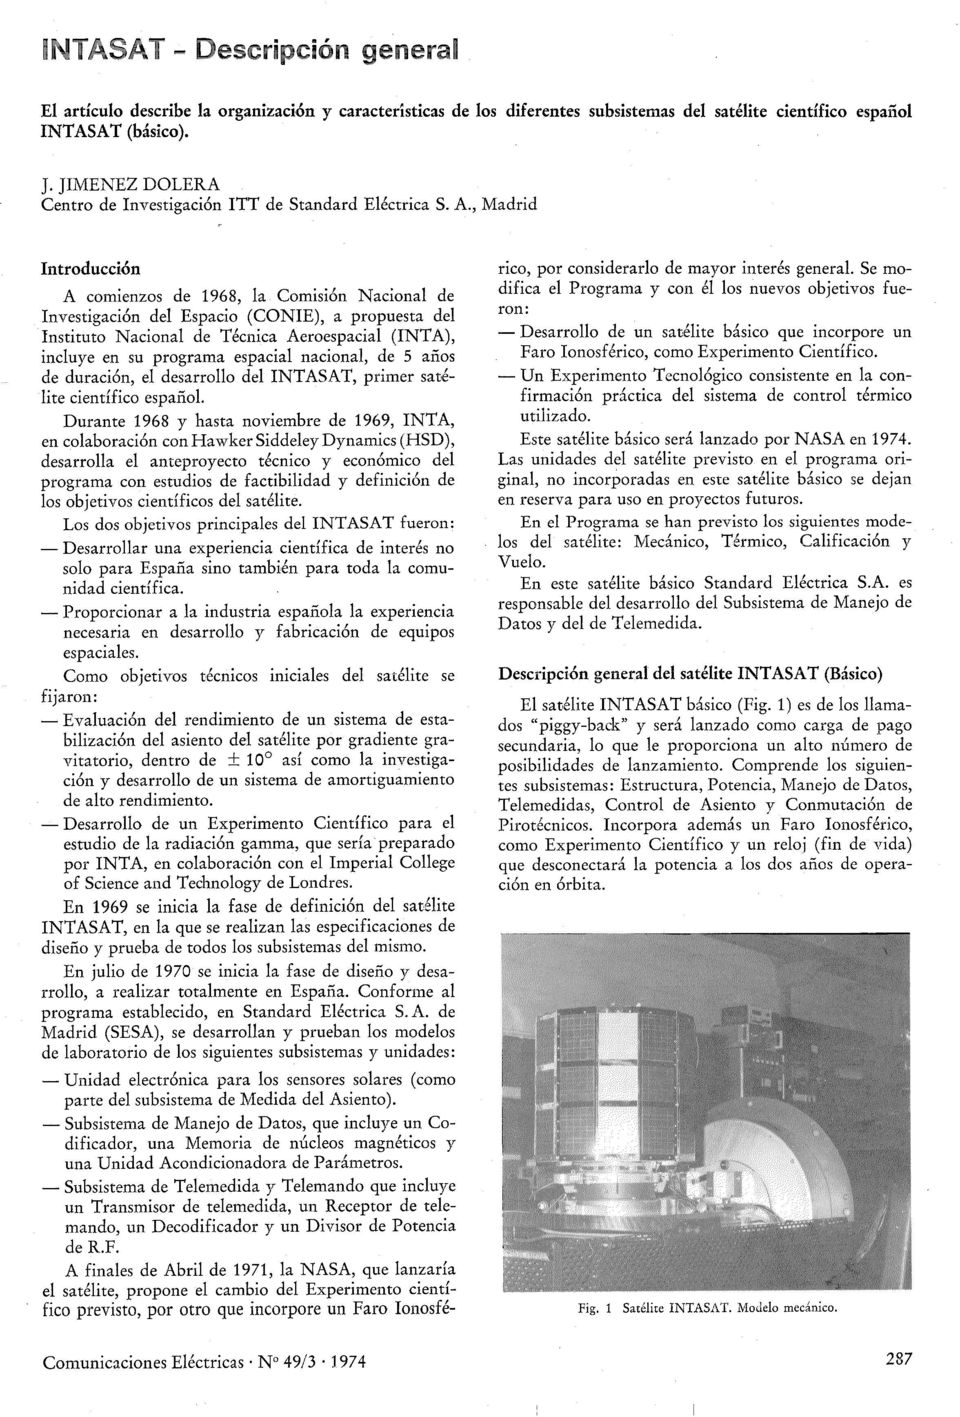 , Madrid ntroducción A comienzos de 1968, la Comisión Nacional de nvestigación del Espacio (CONE), a propuesta del nstituto Nacional de Técnica Aeroespacial (NTA), incluye en su programa espacial